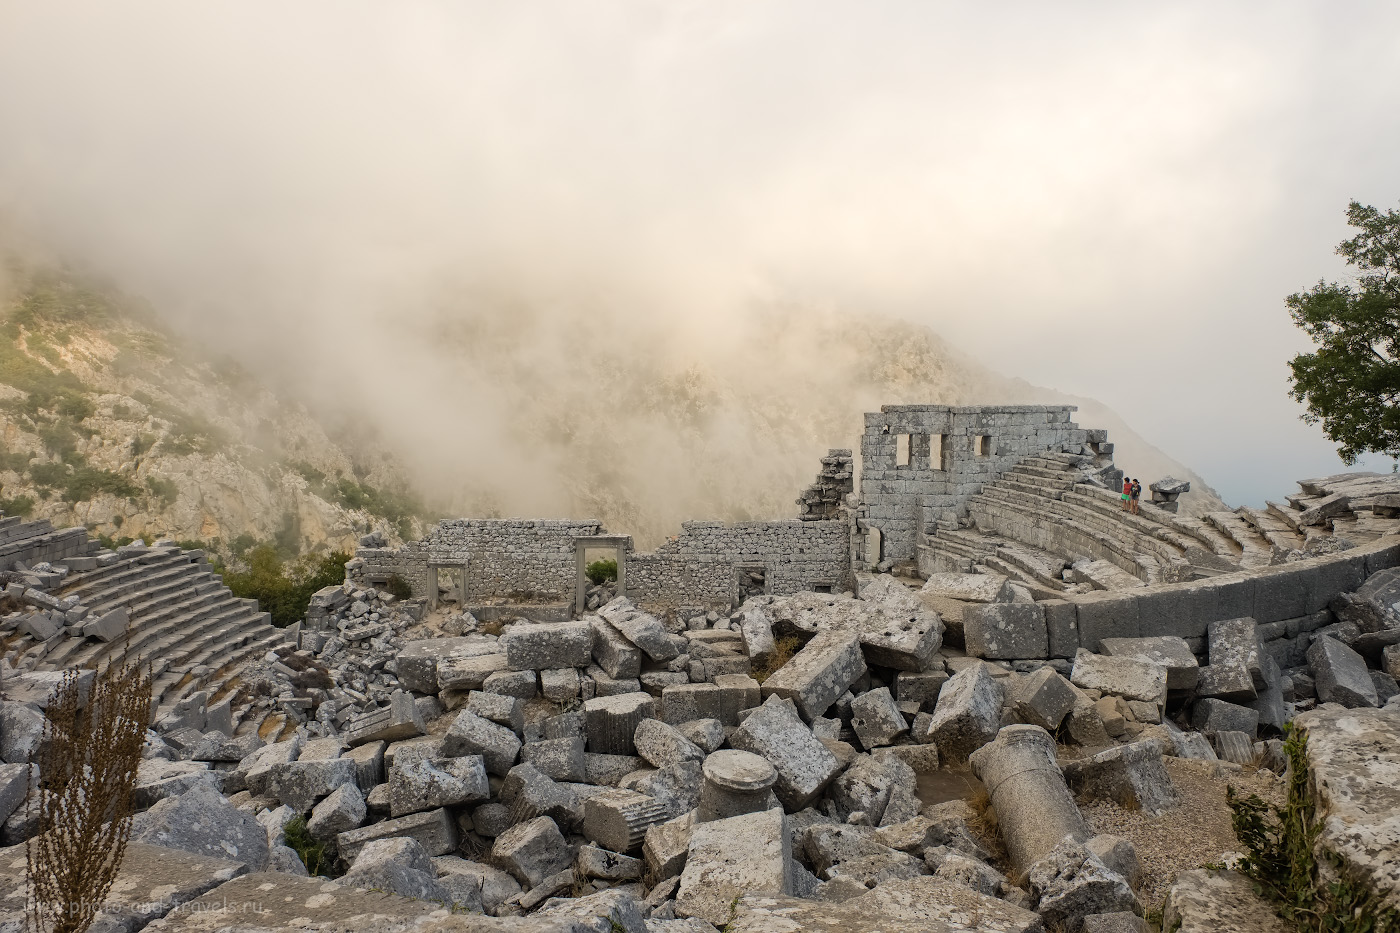 Фотография 8. Немногочисленные туристы рассматривают руины амфитеатра в Термессосе. Как мы ездили на машине по интересным местам недалеко от Анталии. 1/140, 8.0, 200, +0.33, 16.